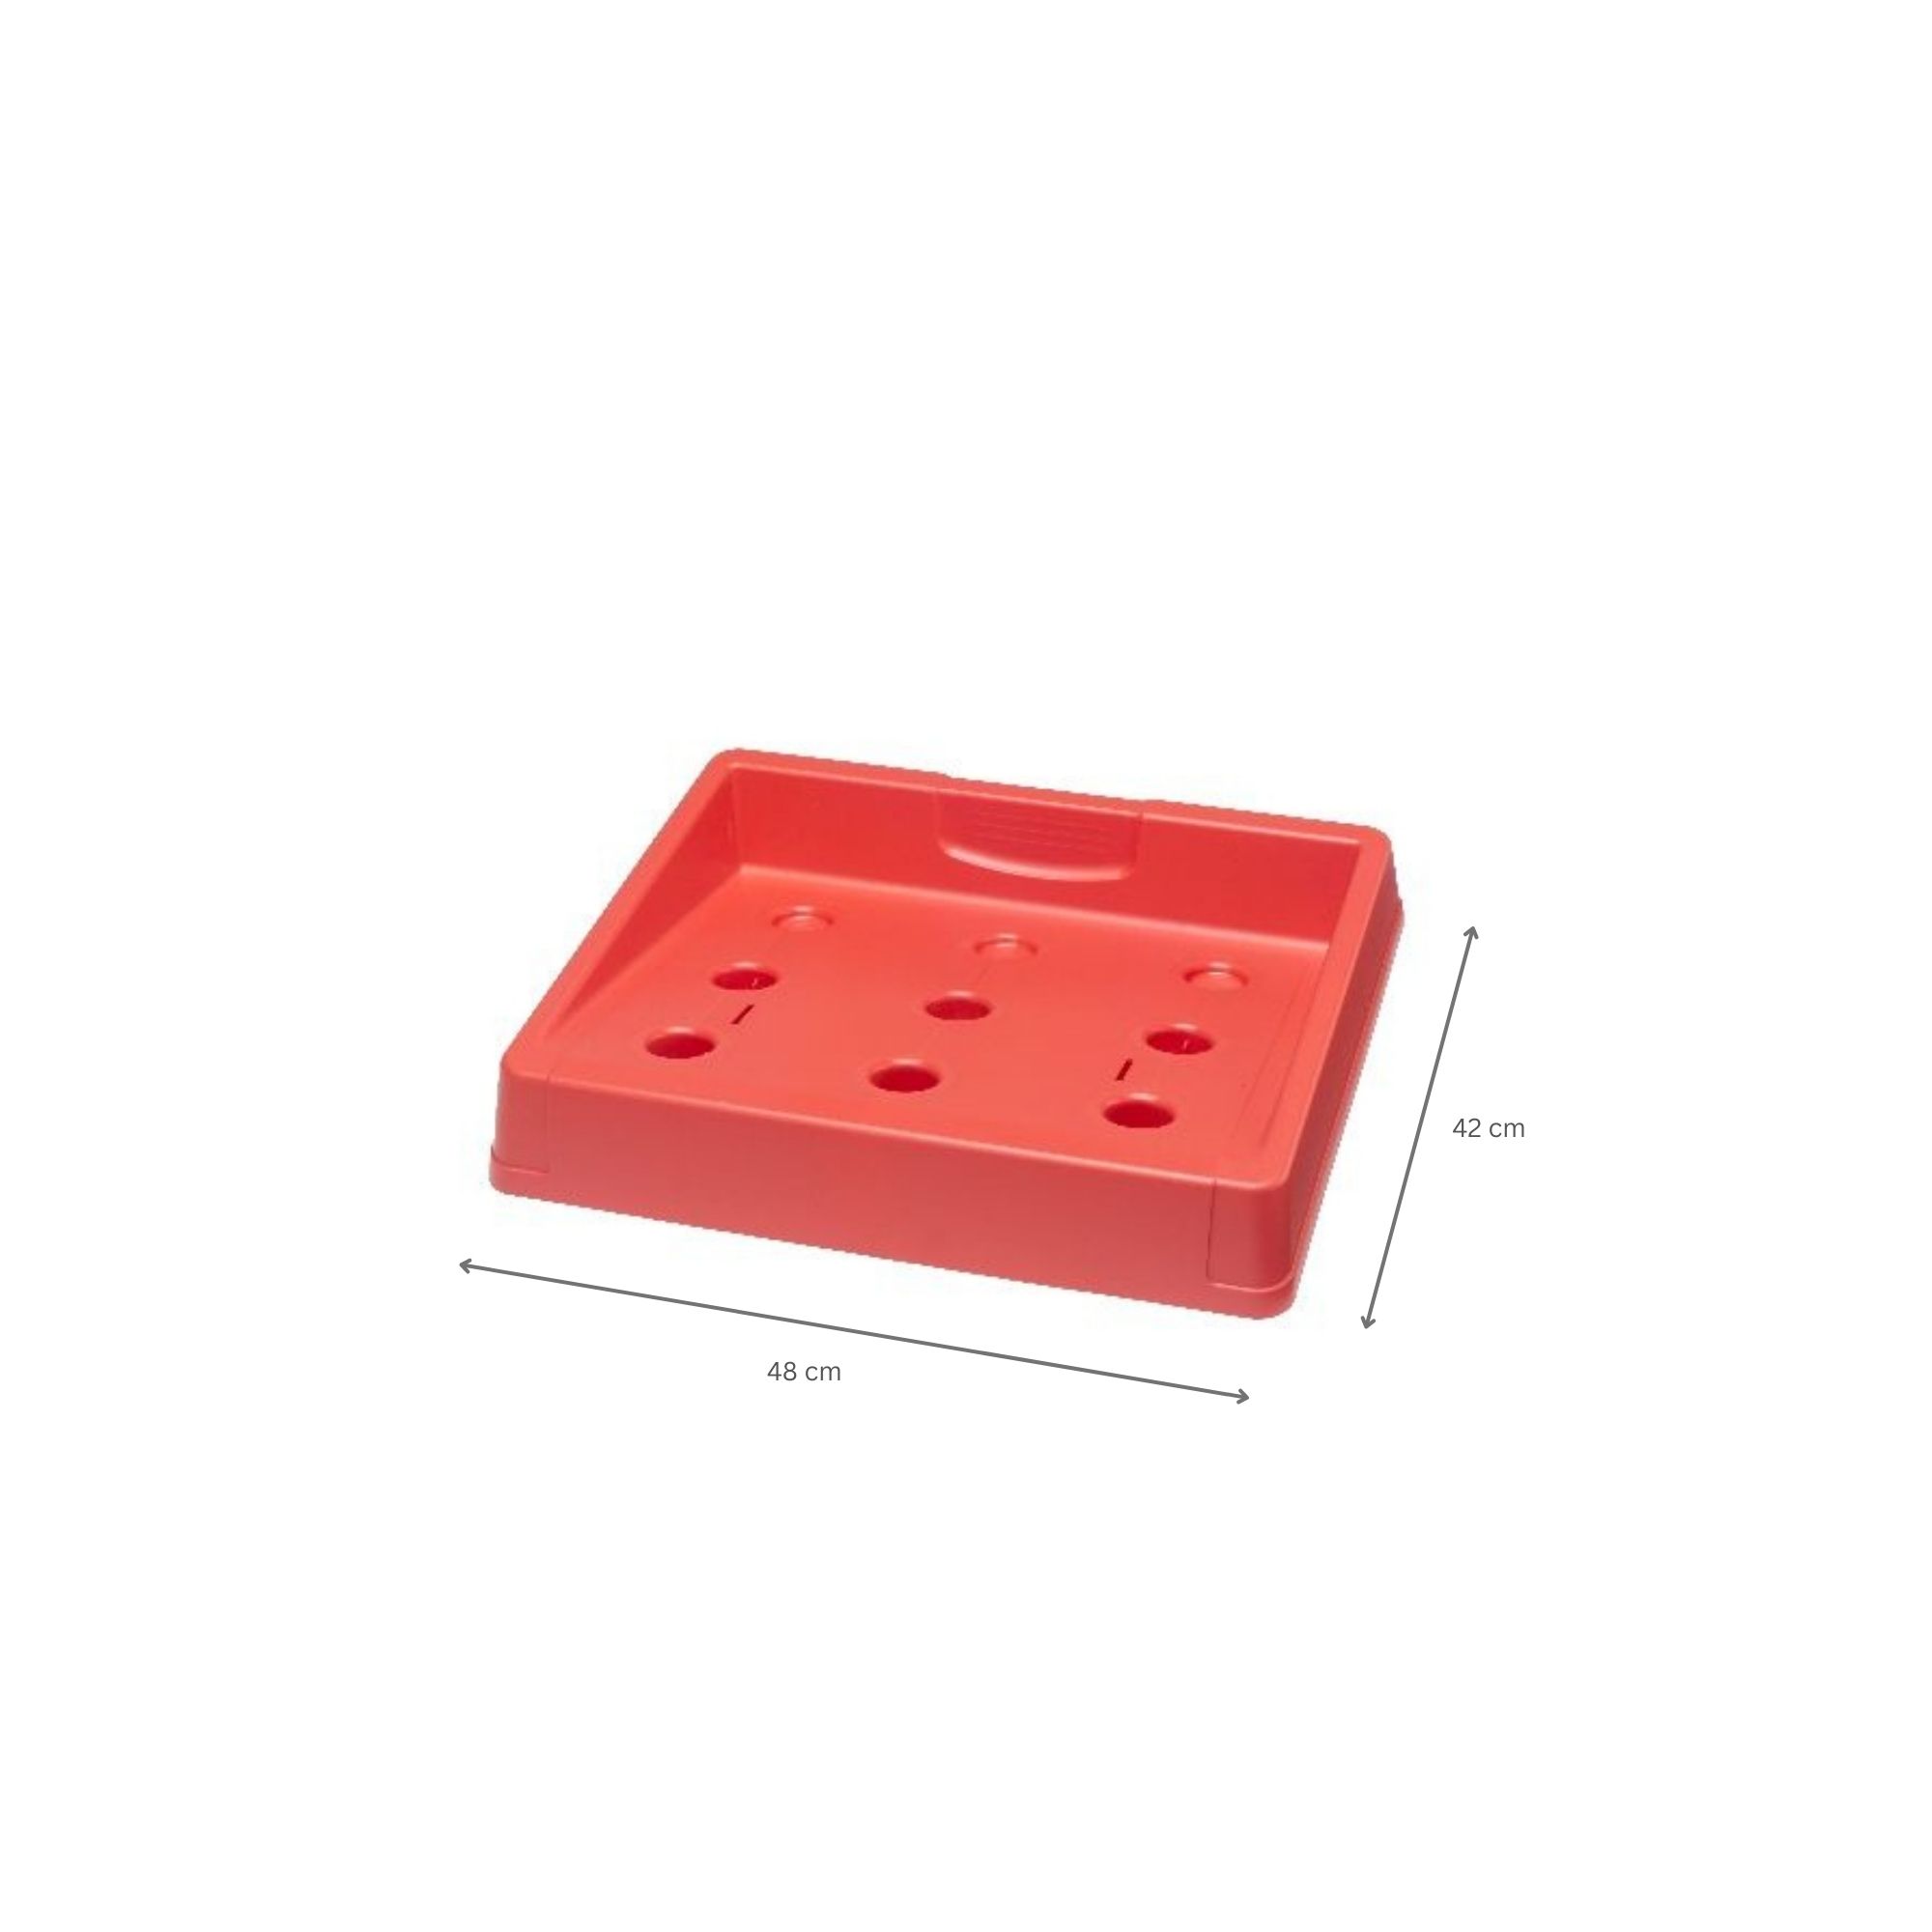 Getränkekistenständer Plattensee | HxBxT 7,5x48x42cm | Rot